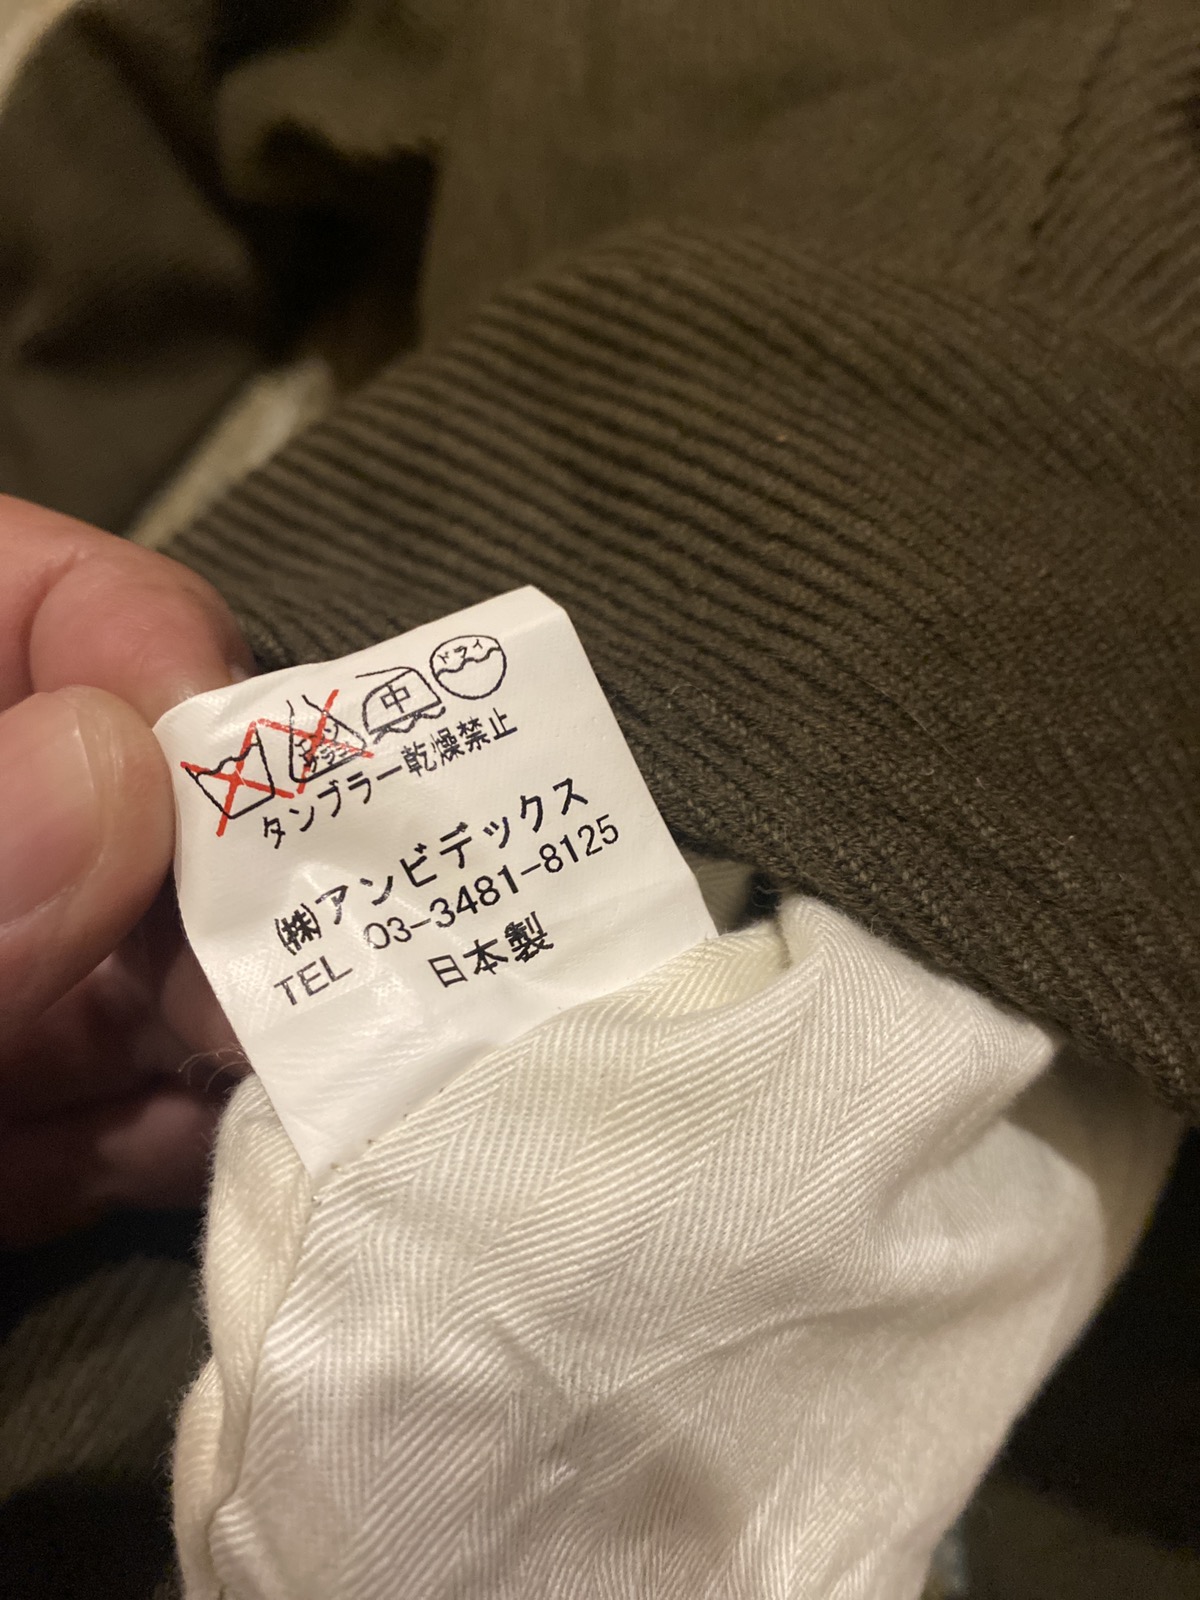 Japanese Brand - Vintage Relacher Coat Jacket JapaneseBrand Nice Design - 5